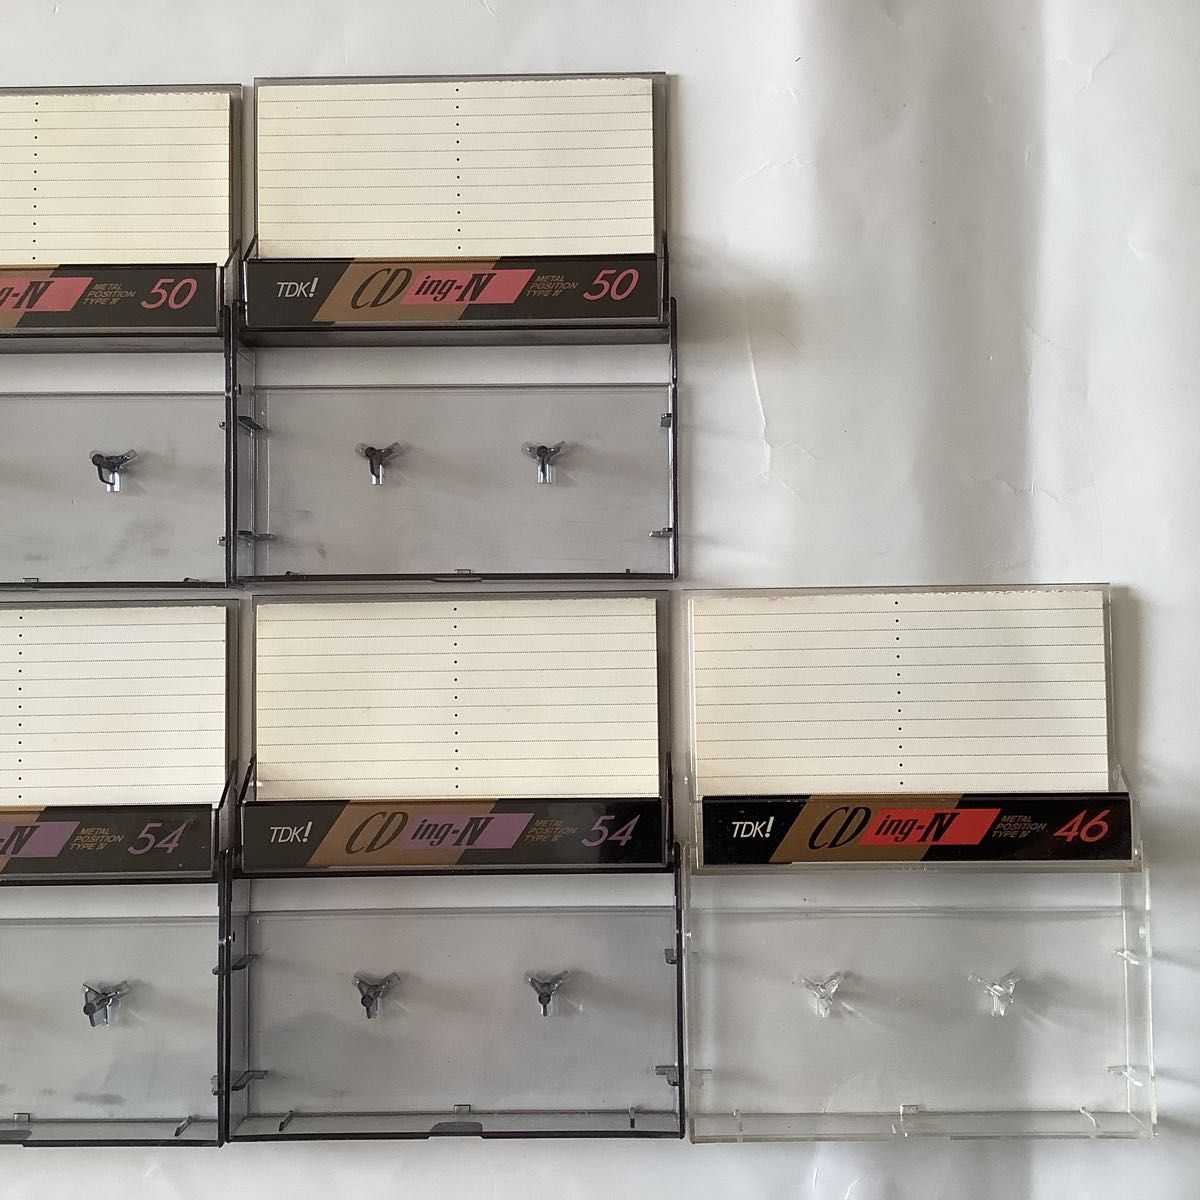 昭和レトロ TDKメタル カセットテープ CDing-Ⅳ 54x2/50x2/46x1/5本セット 中古使用済み